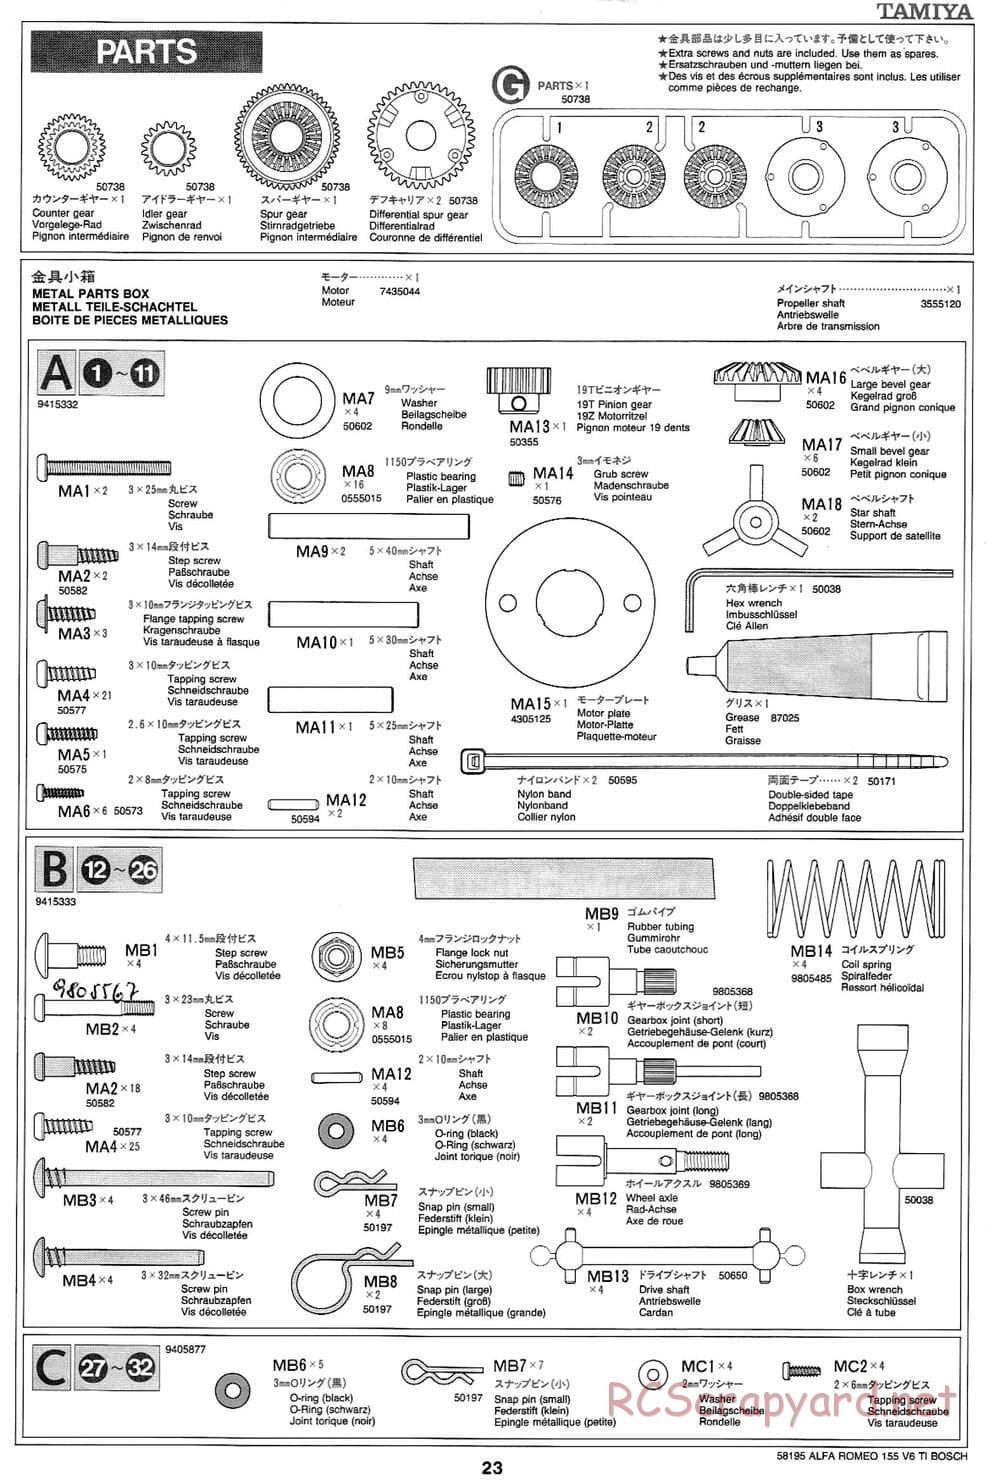 Tamiya - Alfa Romeo 155 V6 TI BOSCH - TL-01 Chassis - Manual - Page 23